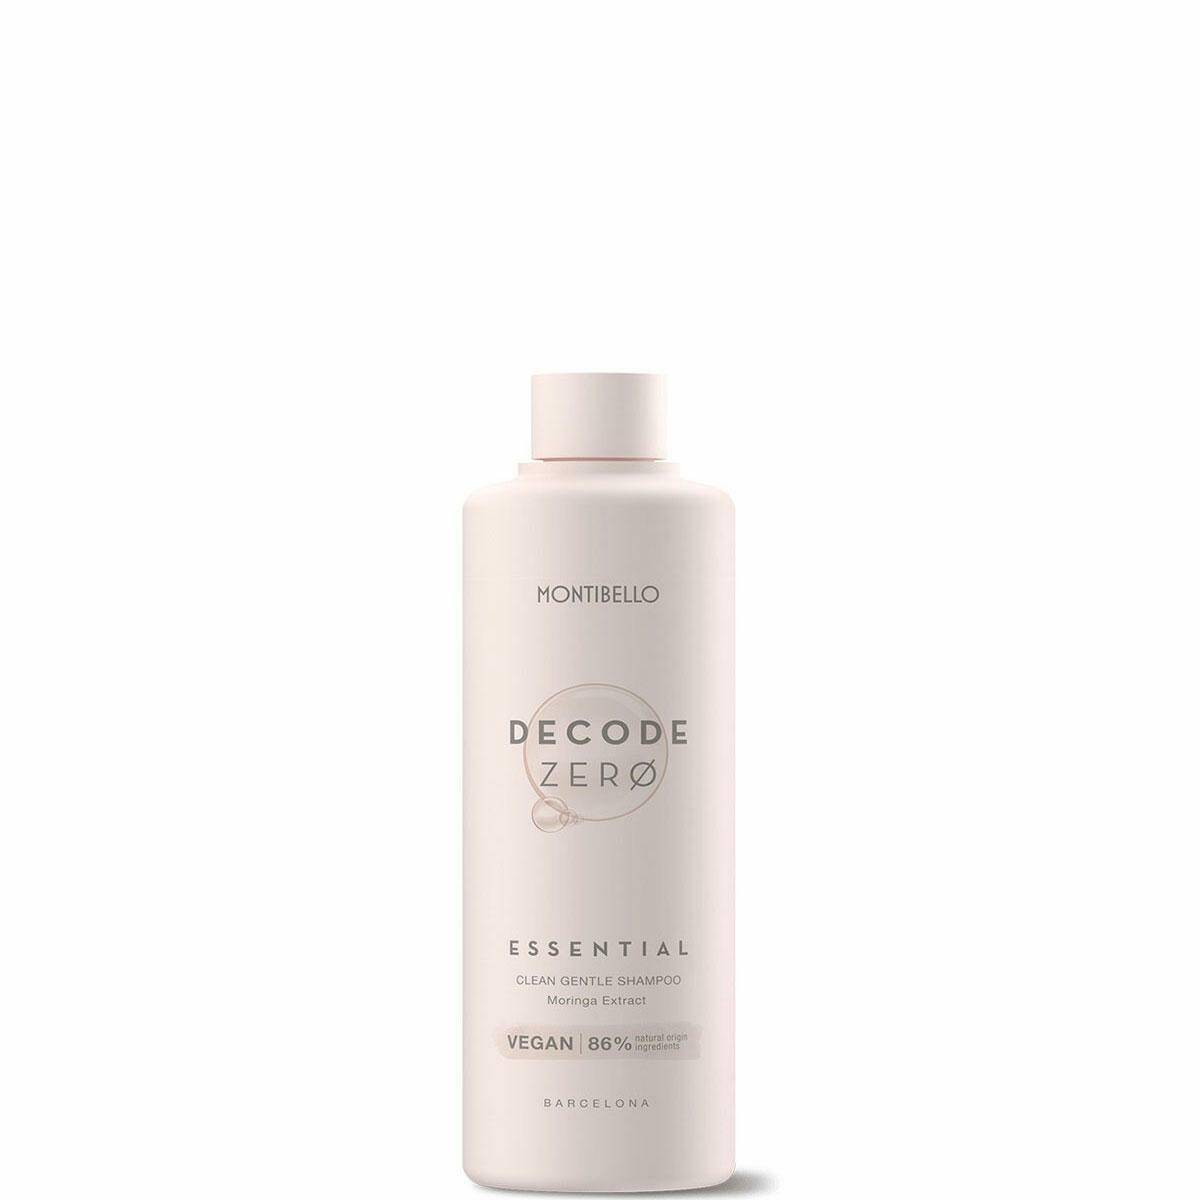 Montibello Decode Zero Essential Naturalny szampon do włosów 300ml